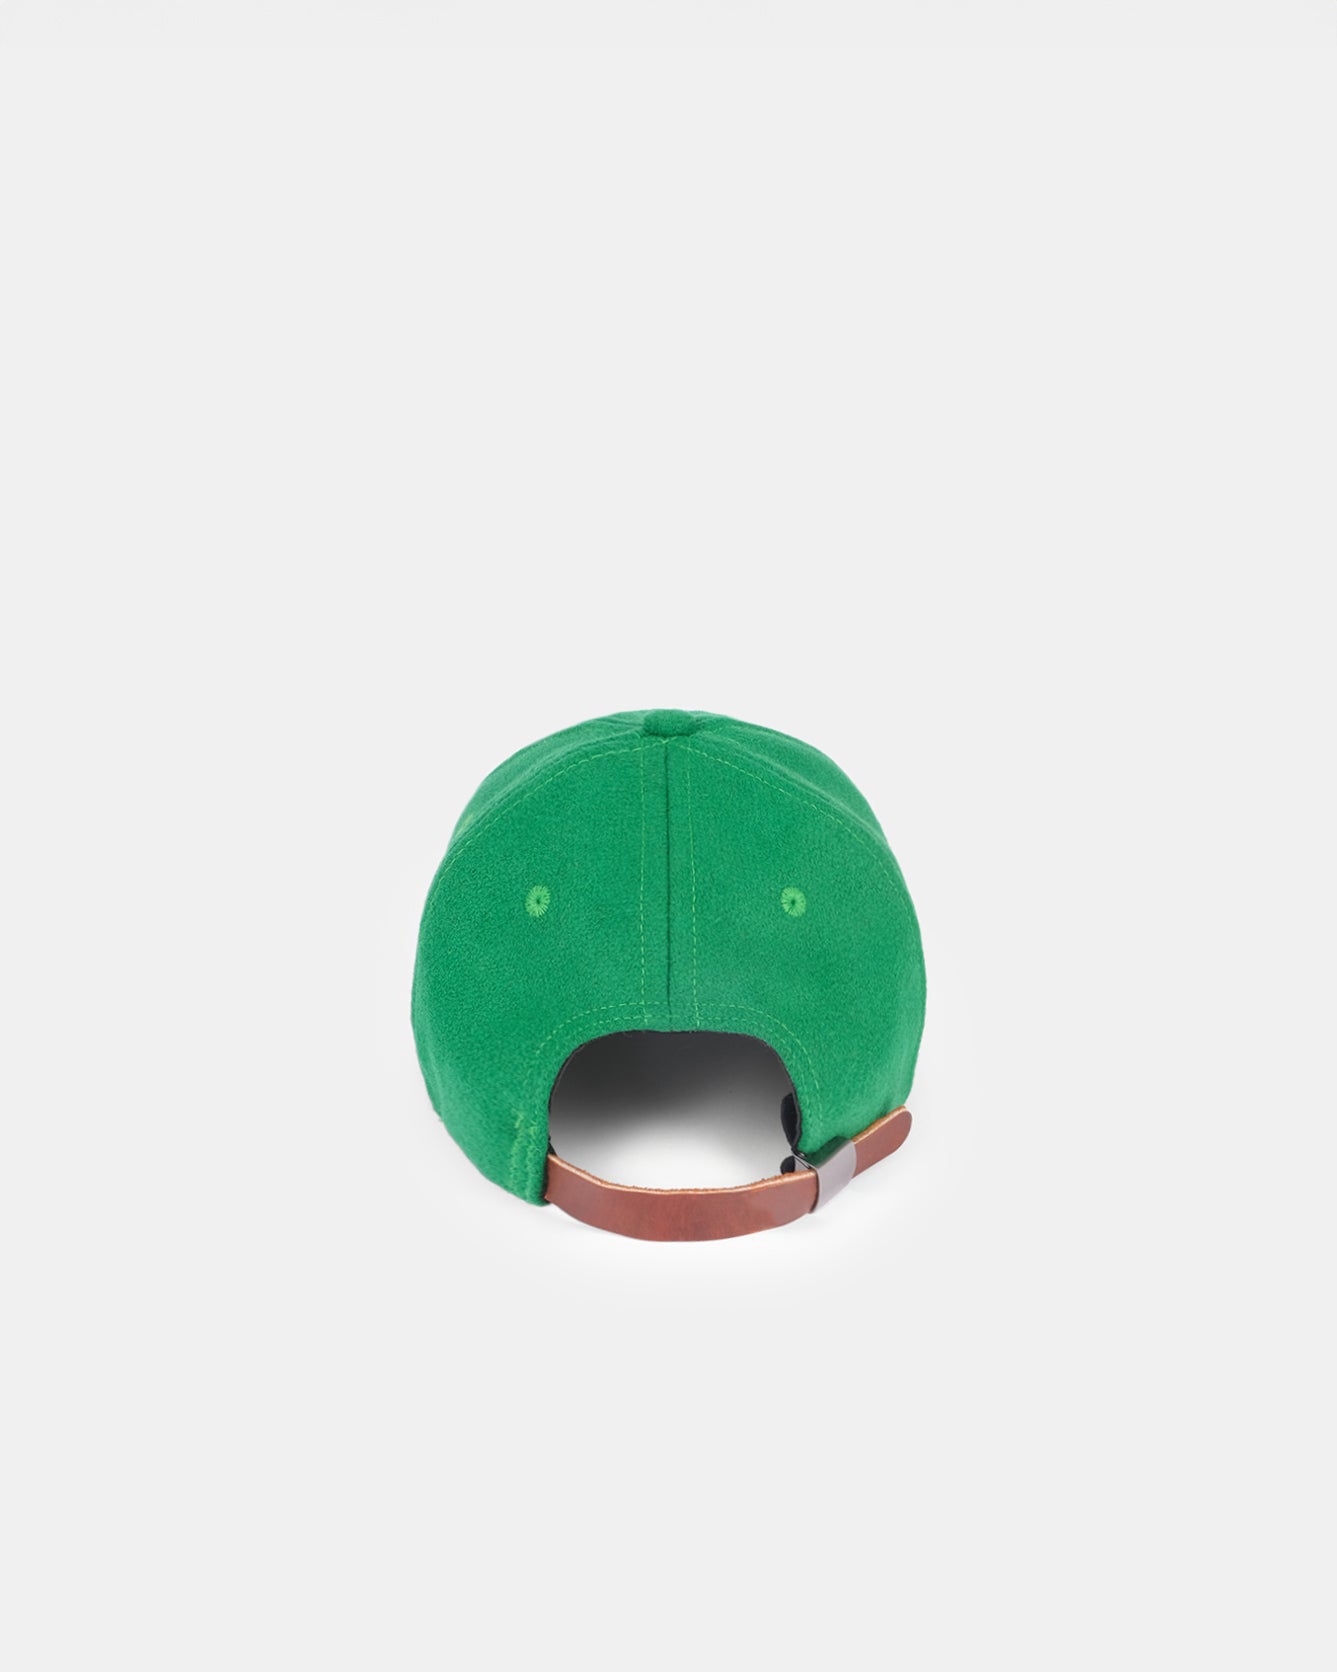 DEHEN - WOOL BASEBALL HAT - KELLY GREEN